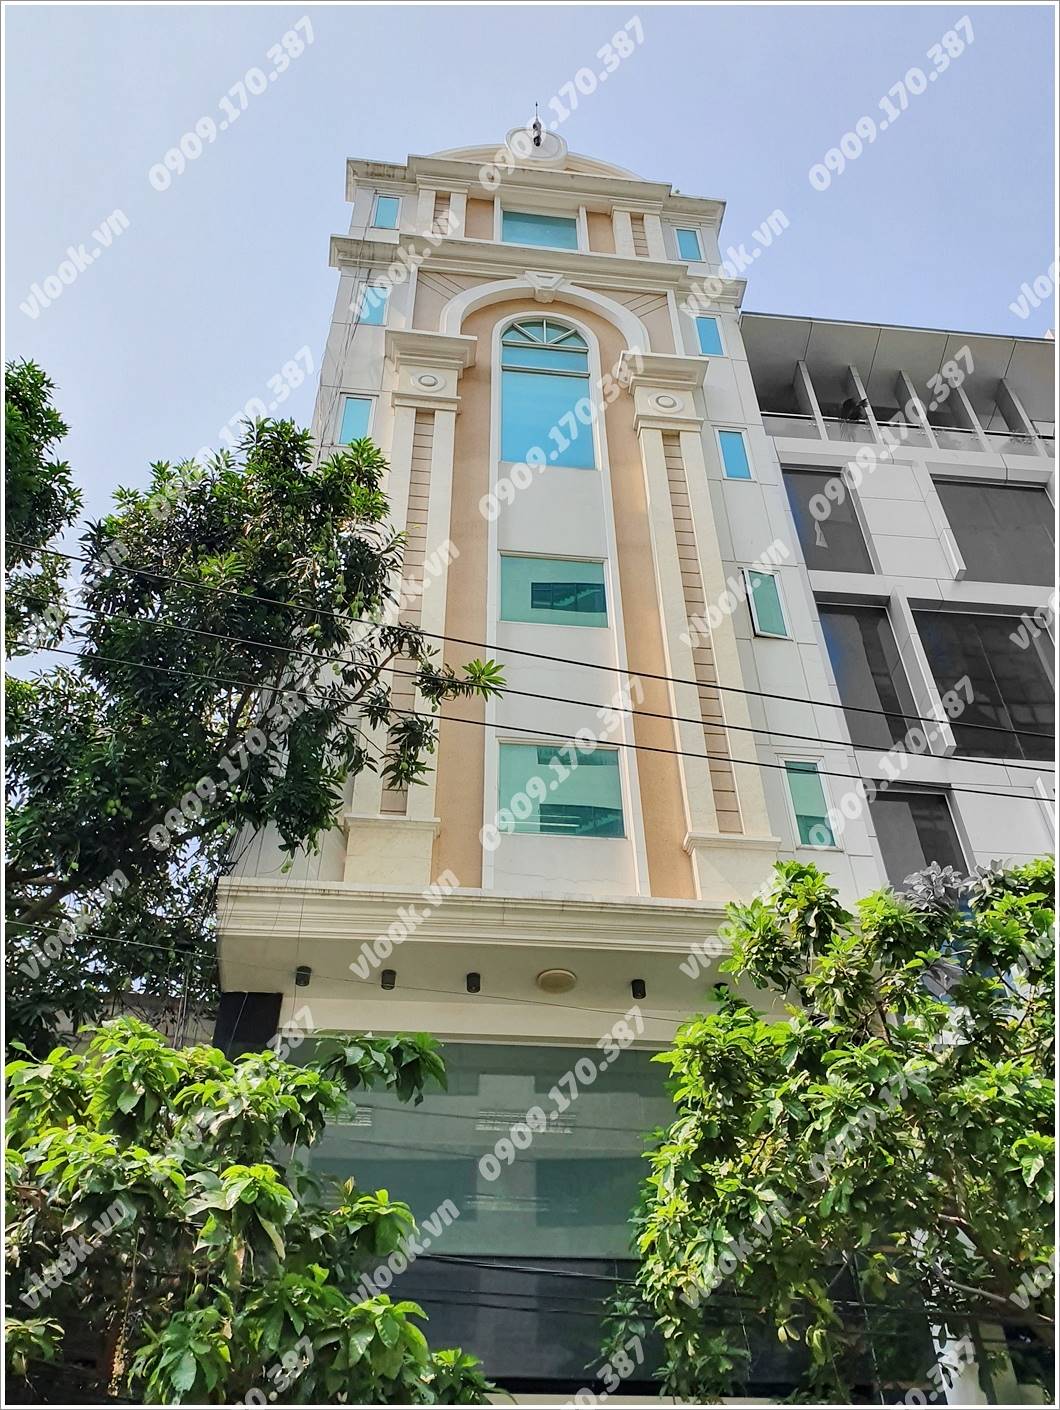 Mặt trước cao ốc cho thuê văn phòng TB Rich Building, Lê Trung Nghĩa, Quận Tân Bình, TPHCM - vlook.vn